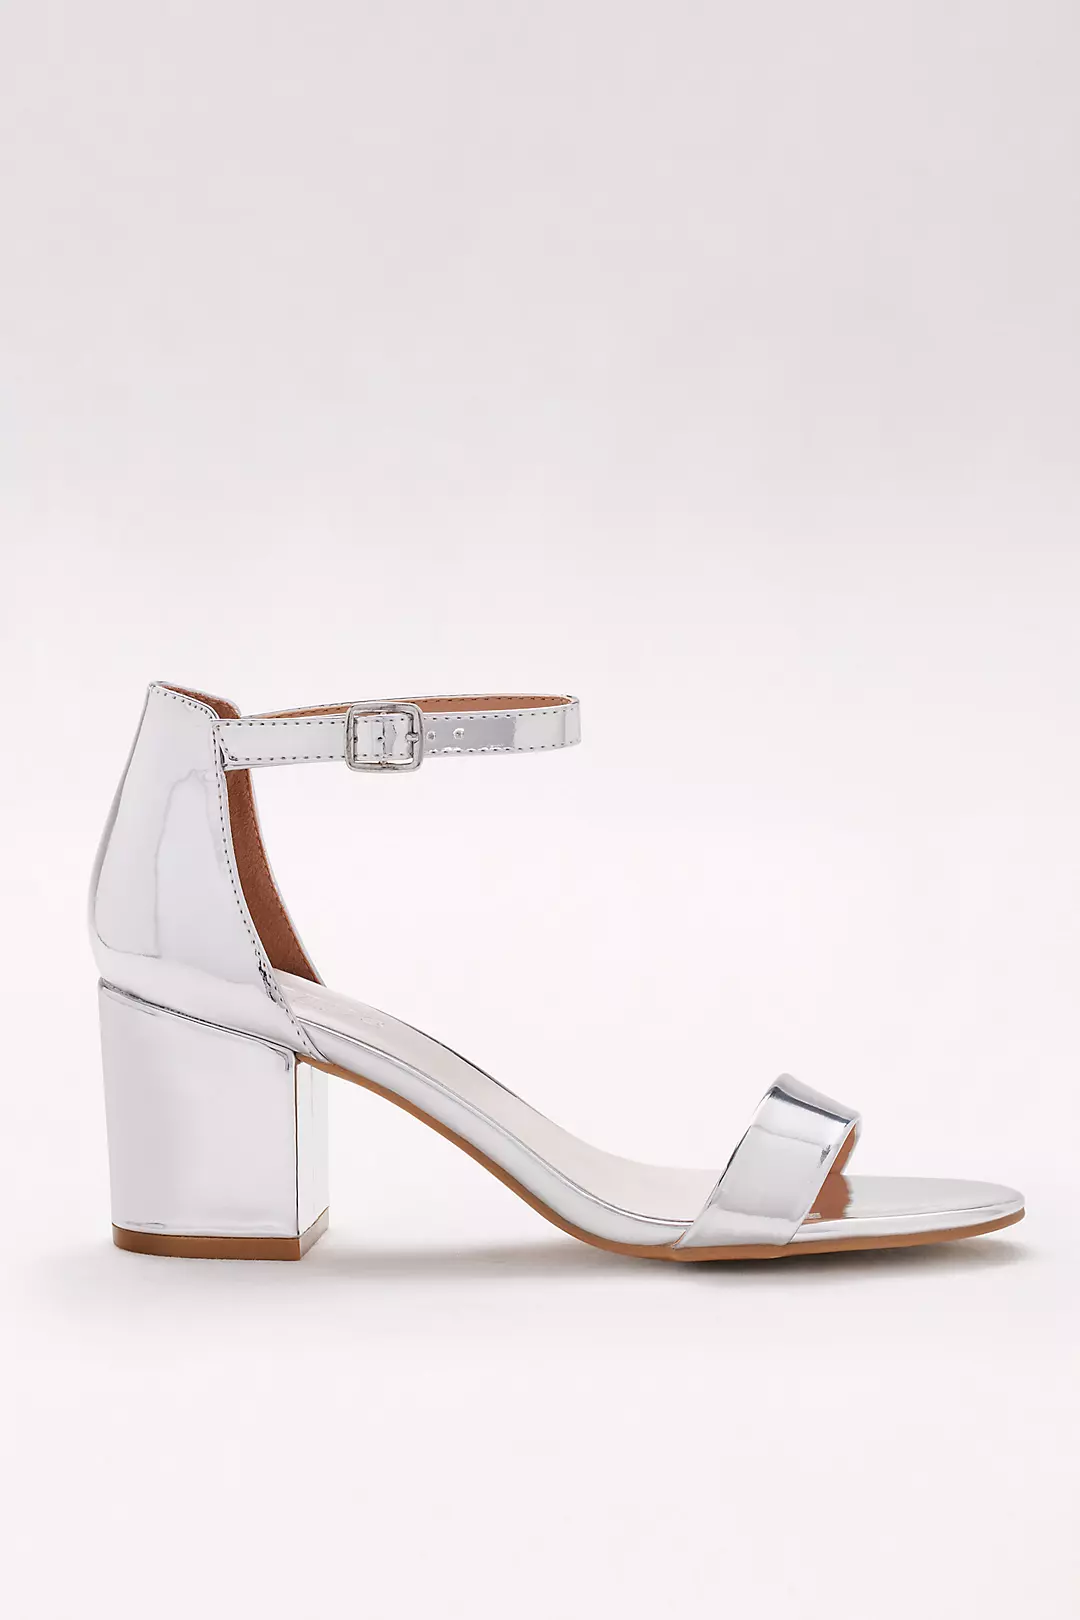 Mirror Metallic Block Heel Sandals Image 3